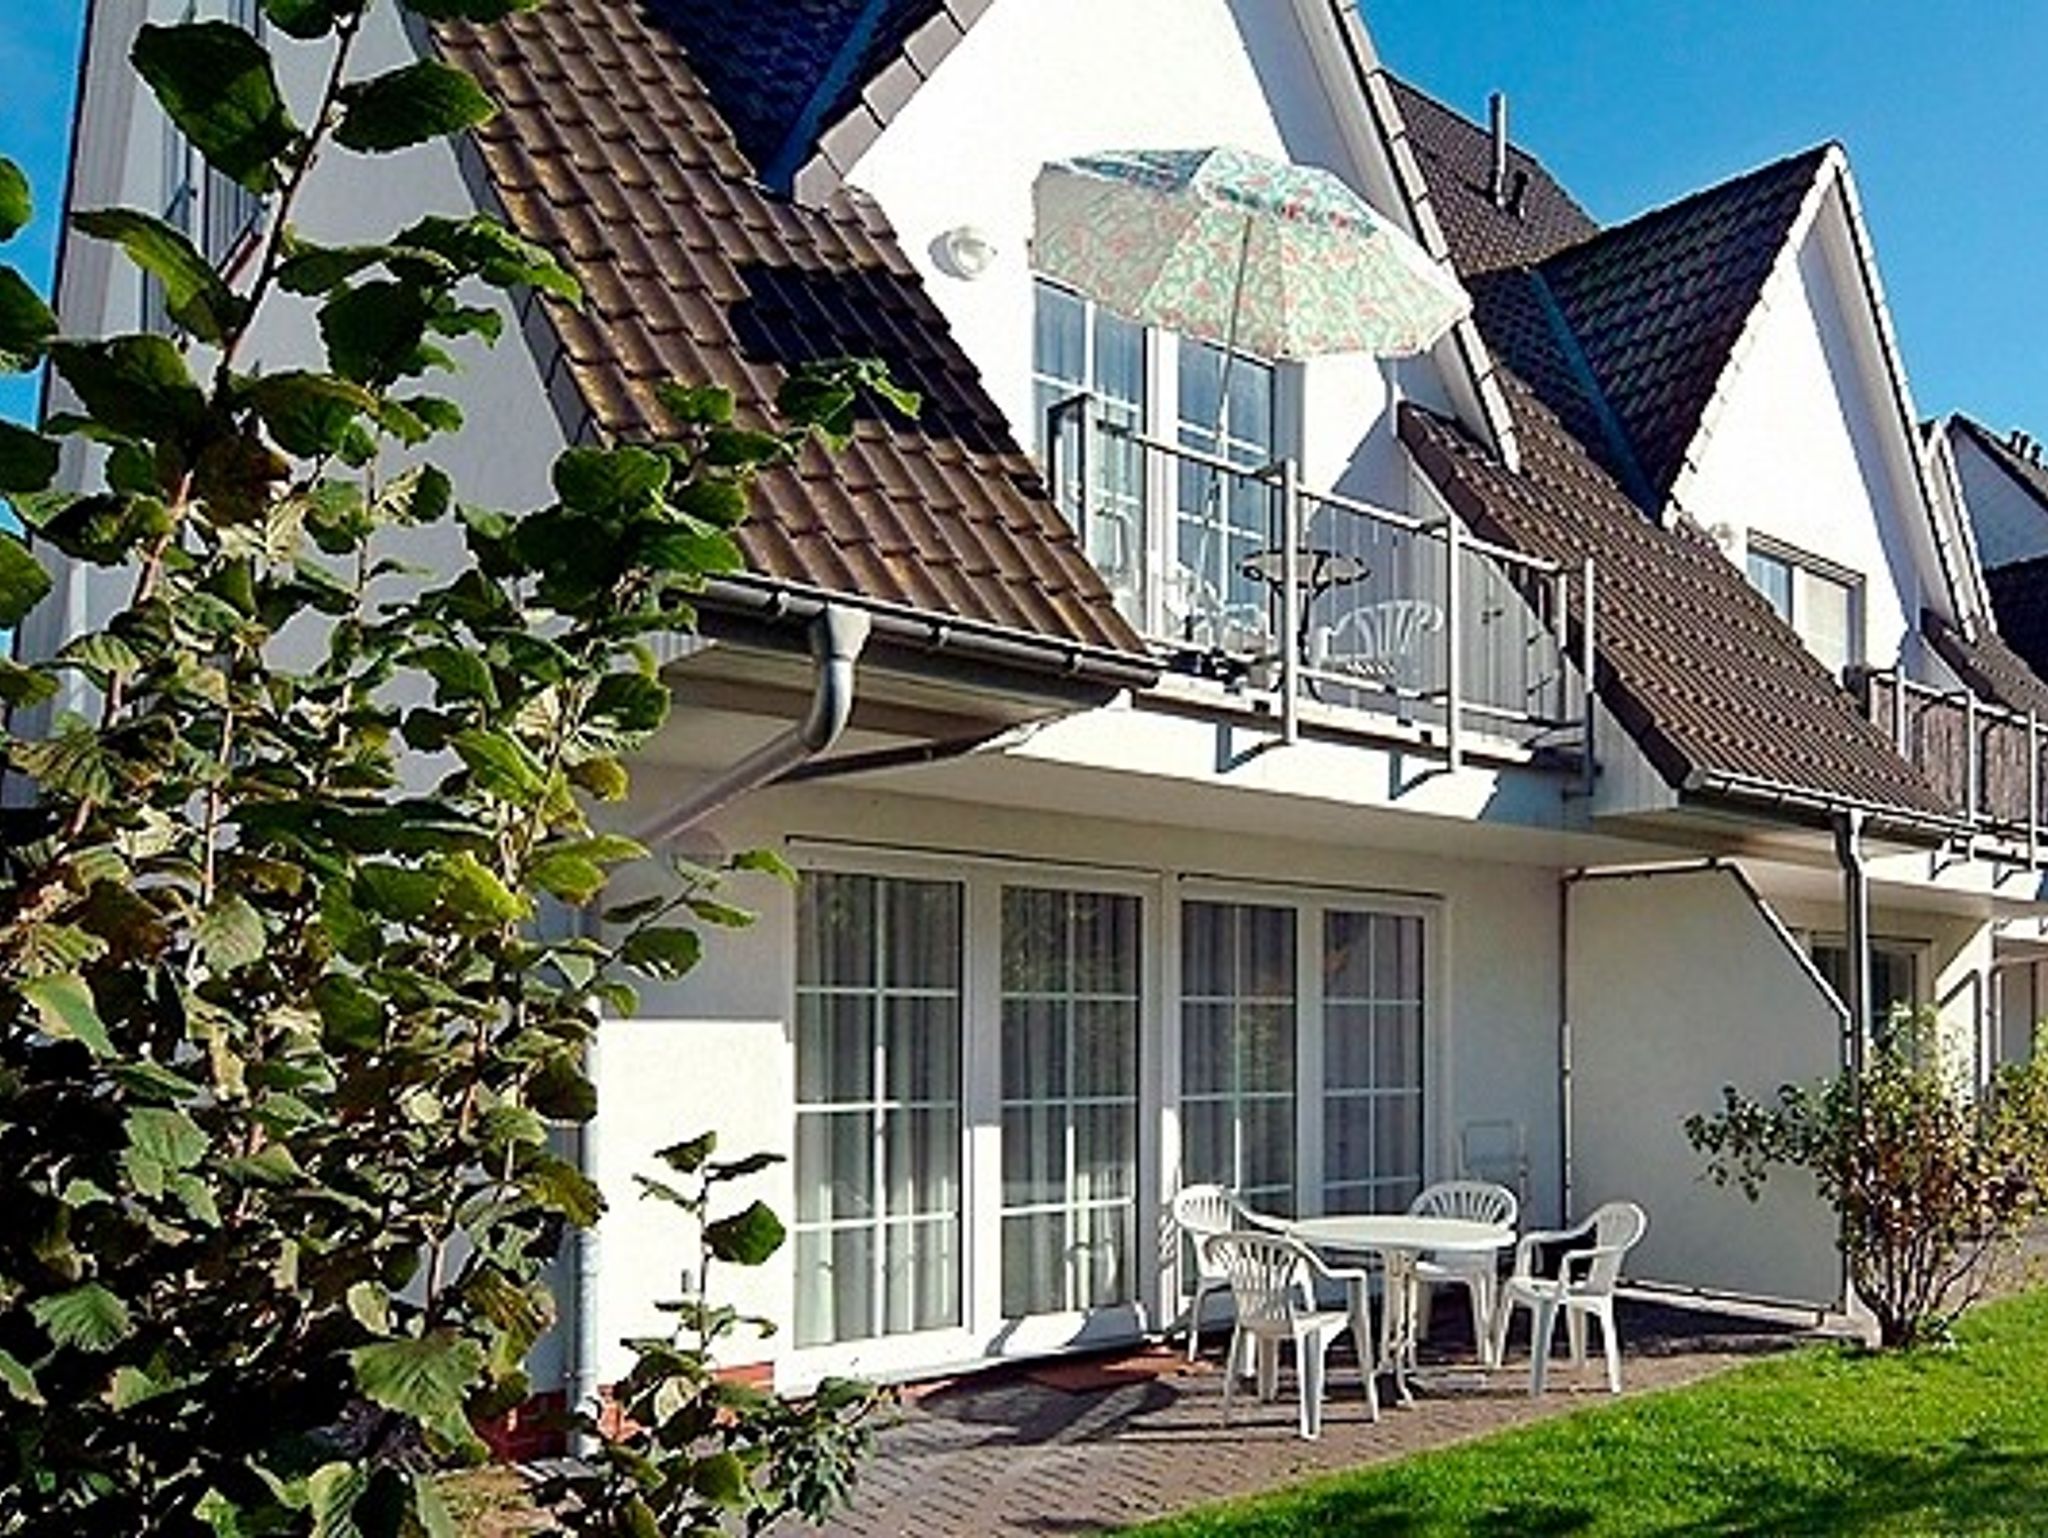 Ferienhaus in Hohenkirchen mit Garten, Grill und Terrasse